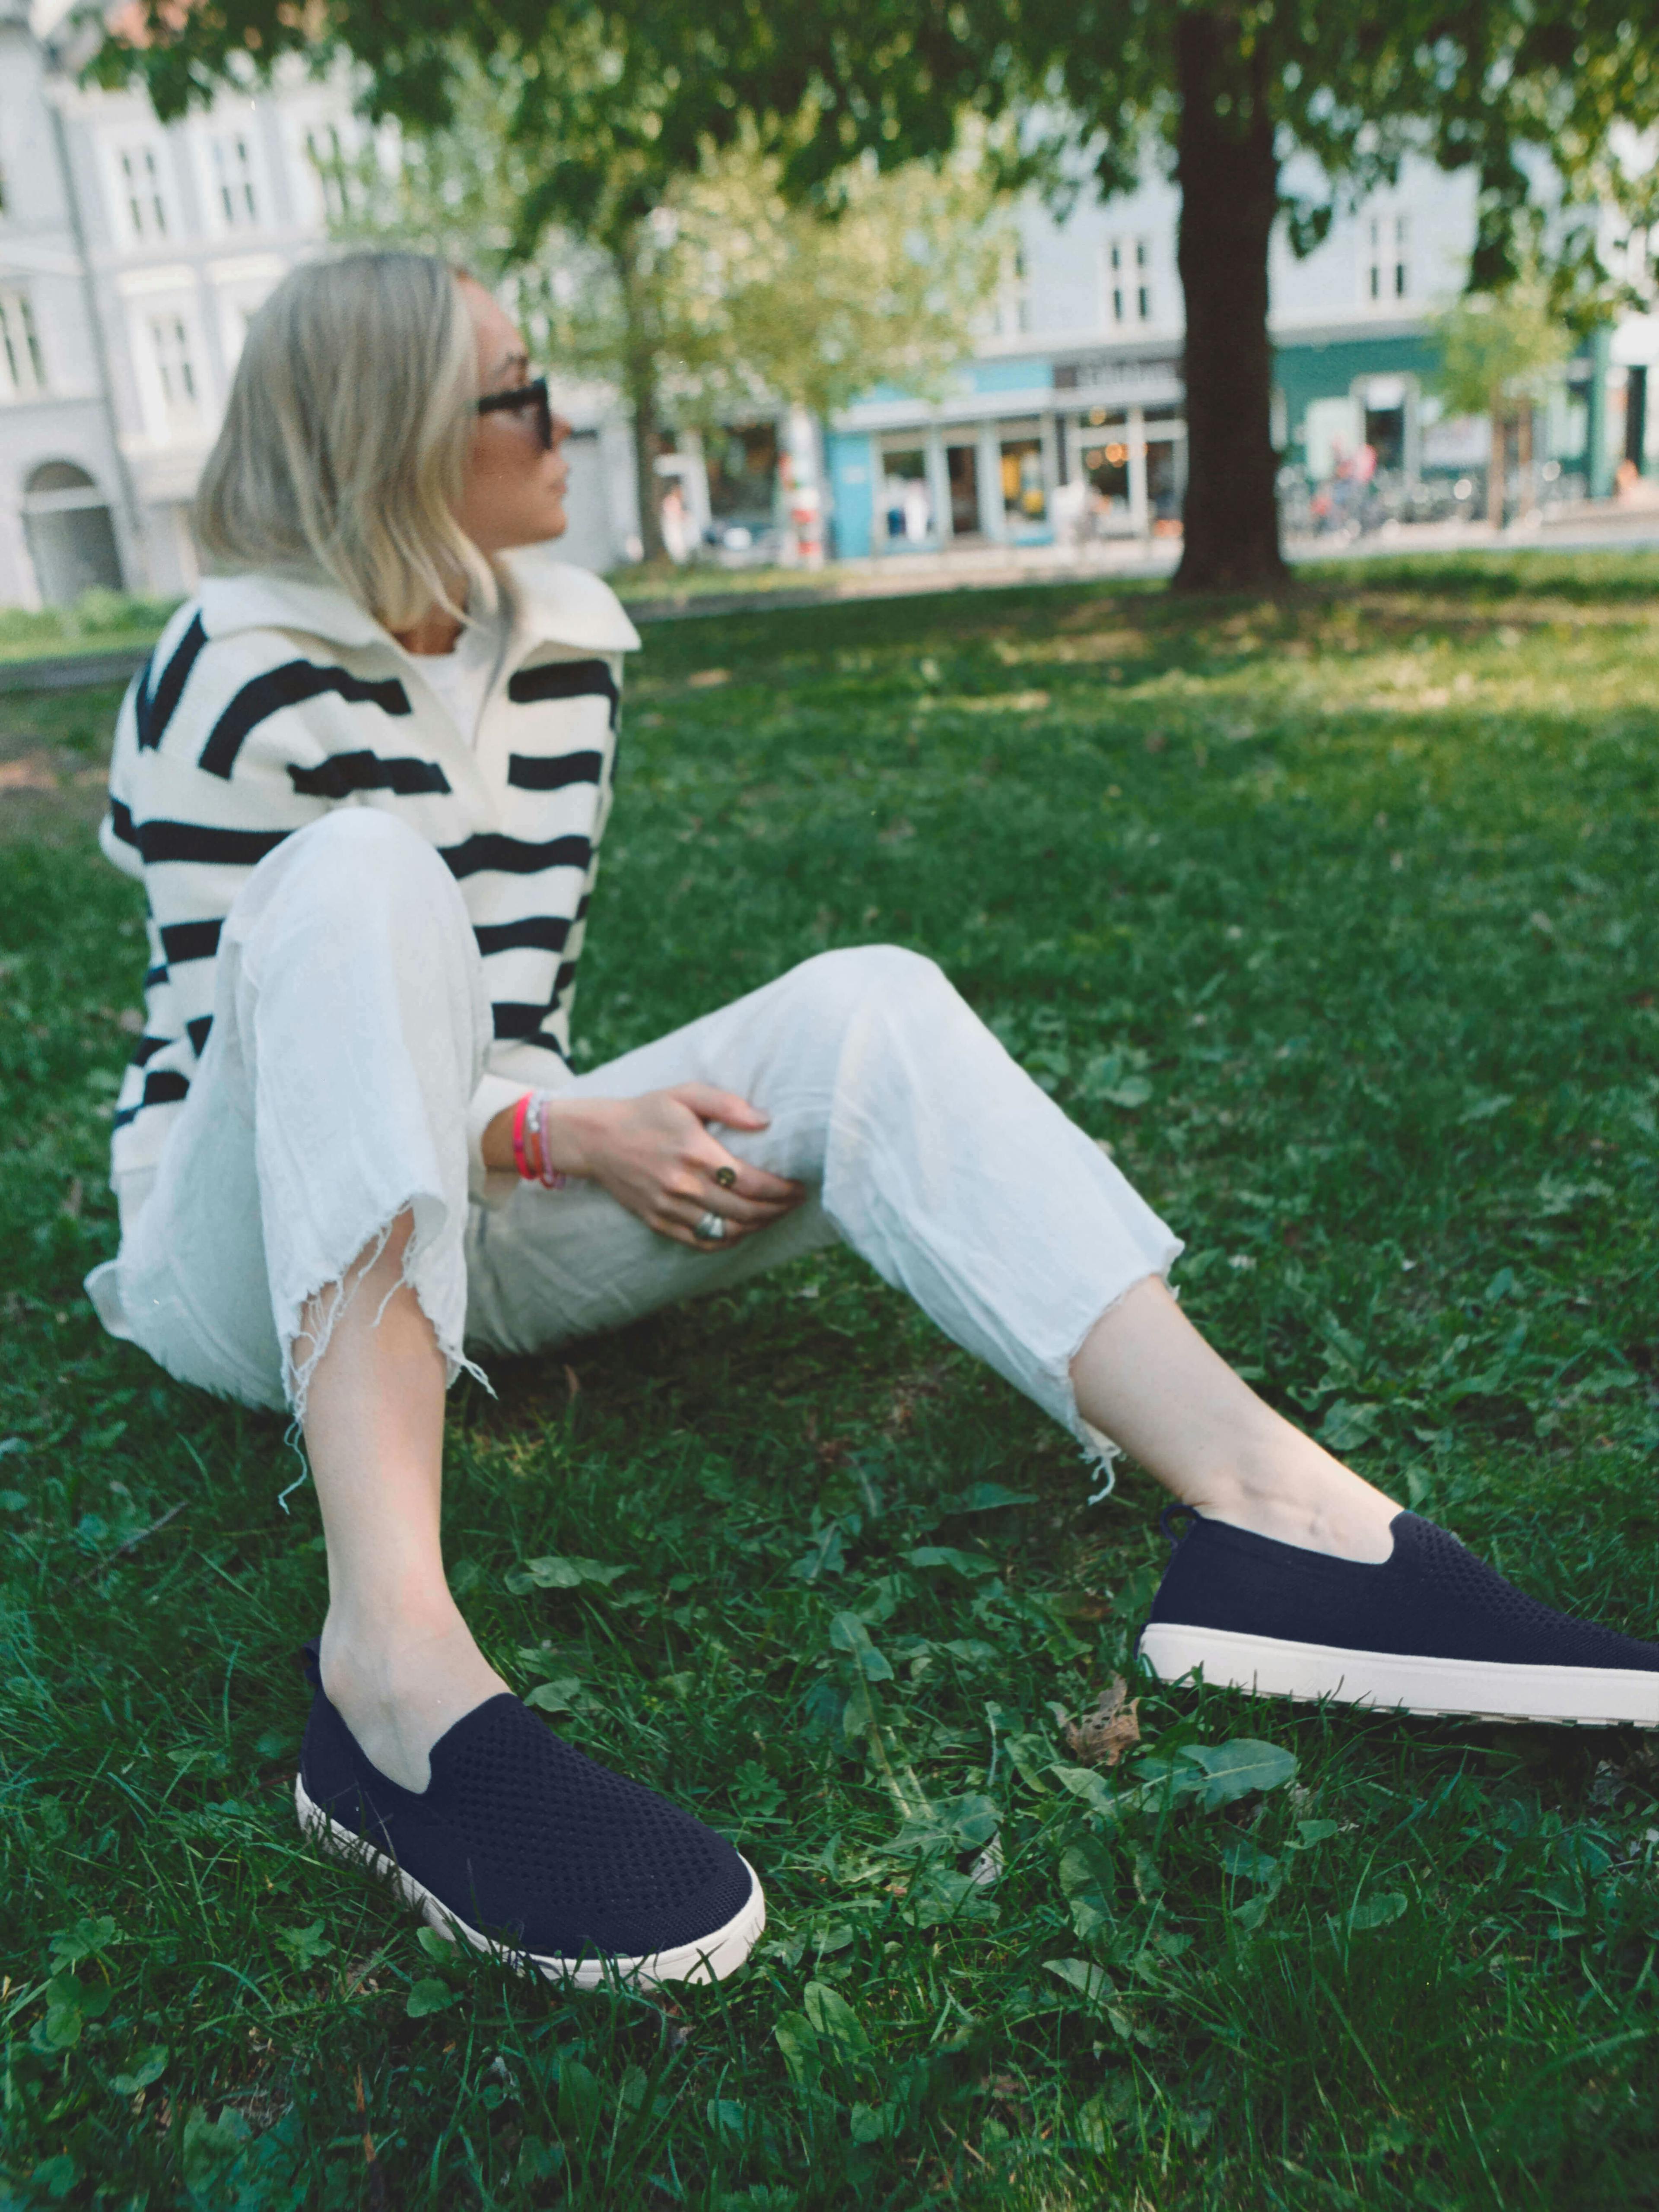 Stup inn i sommeren med Stavern pustende slip-on sneakers, designet for kjølig komfort og enkel vedlikehold med deres maskinvaskbare design.